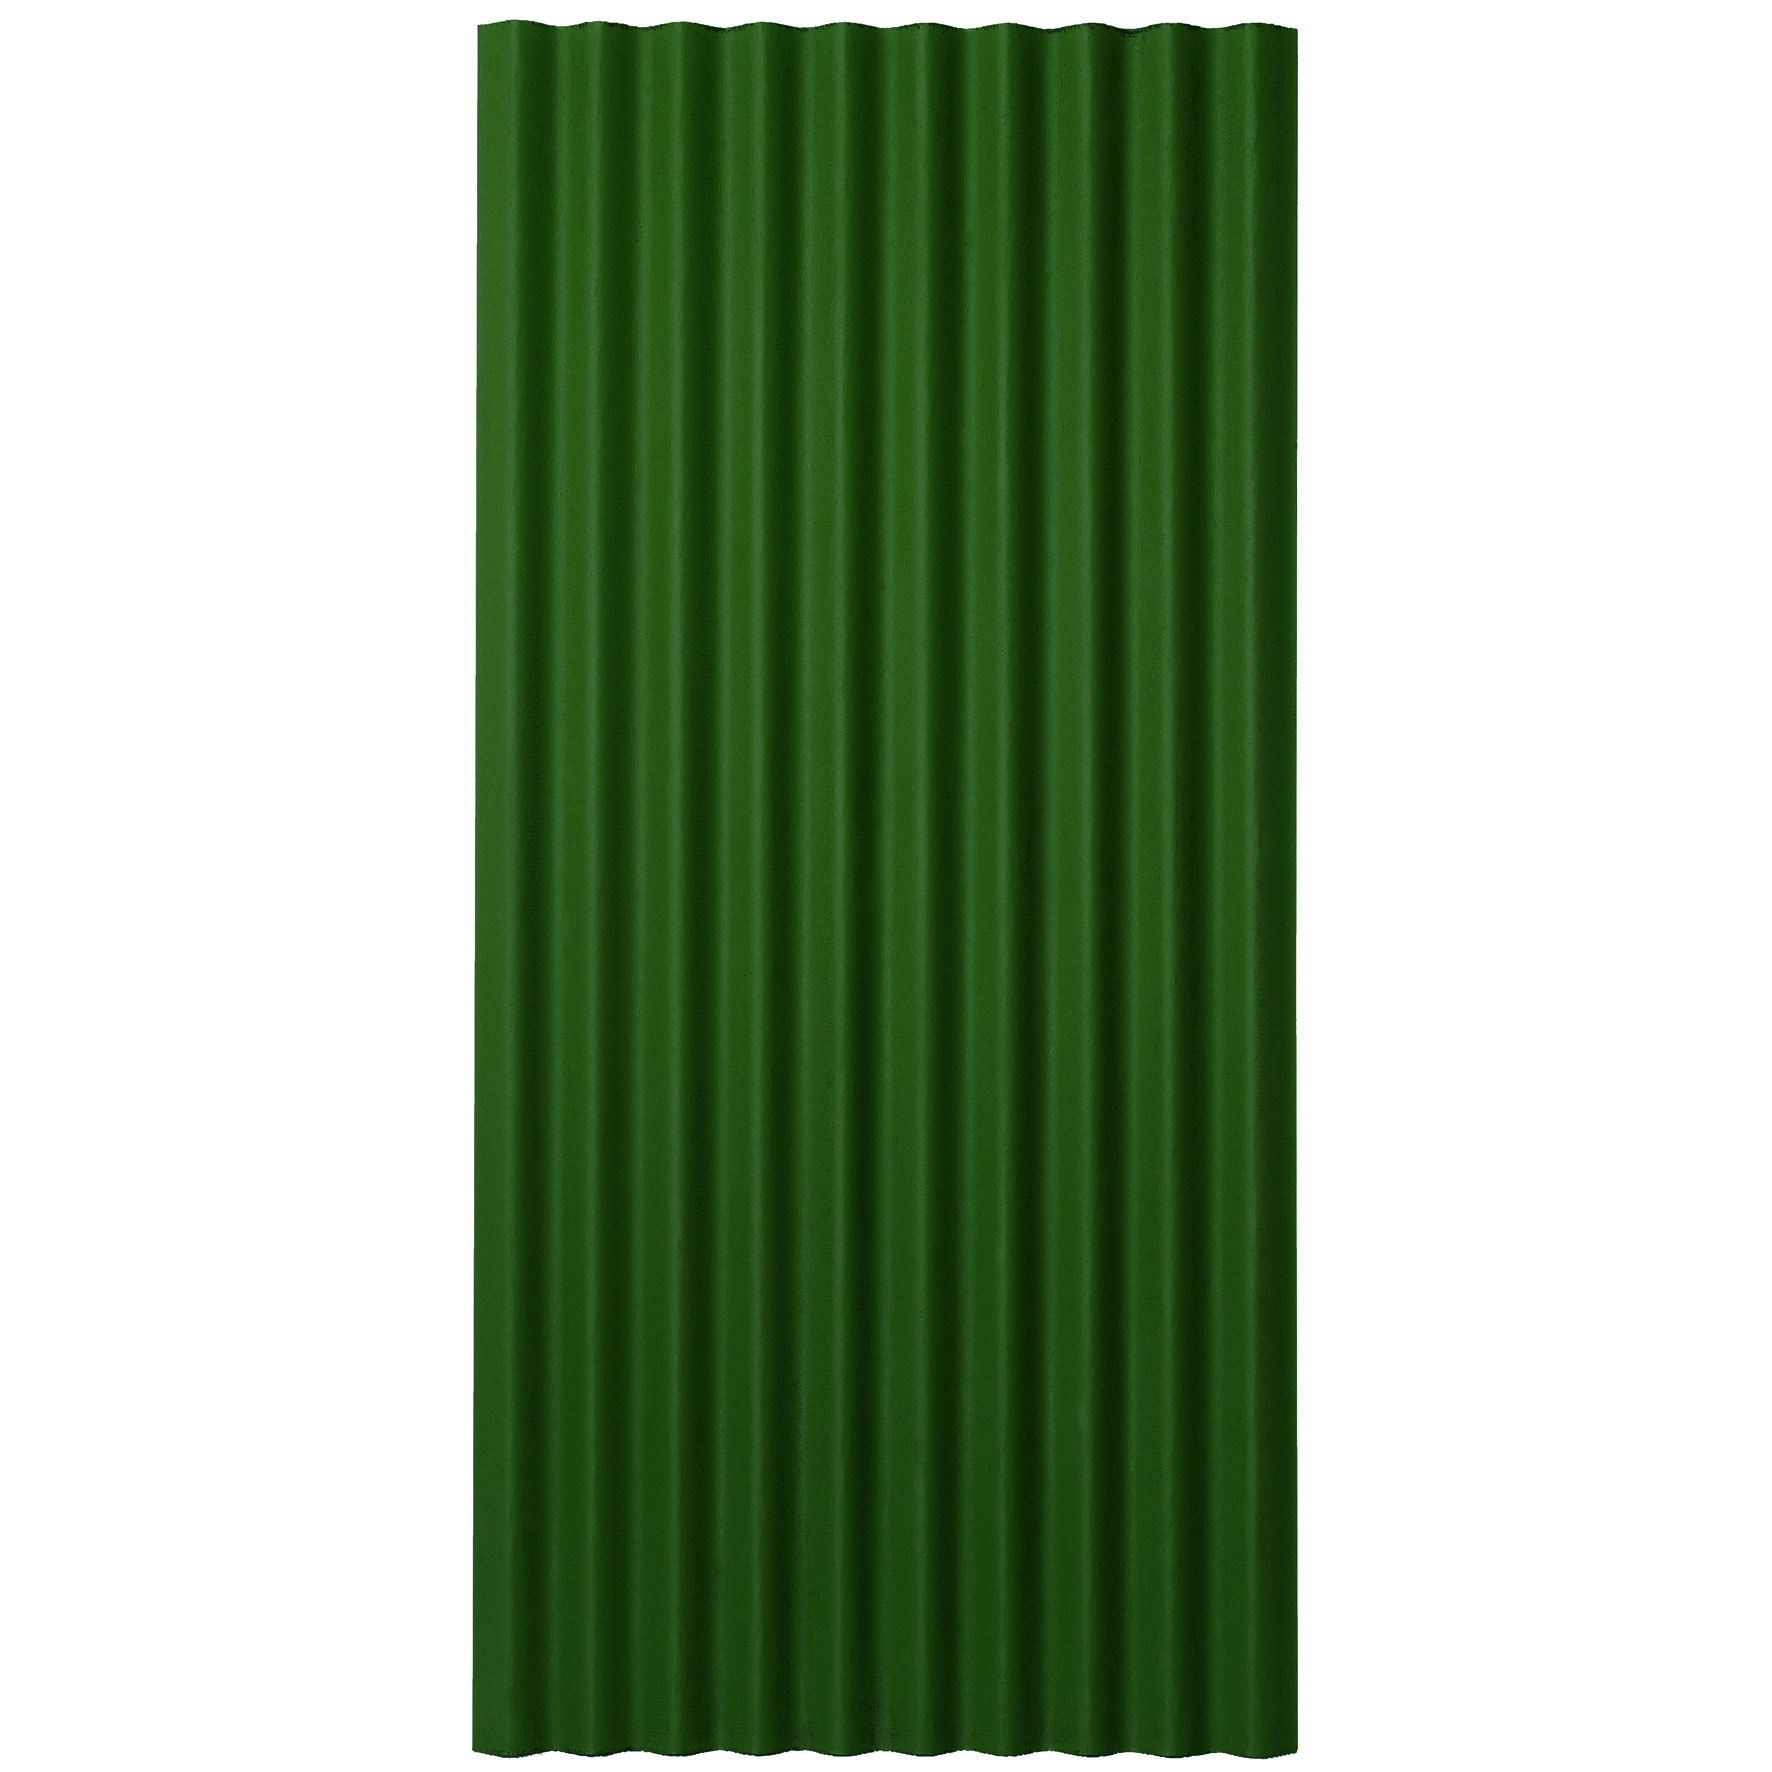 Platte Grün